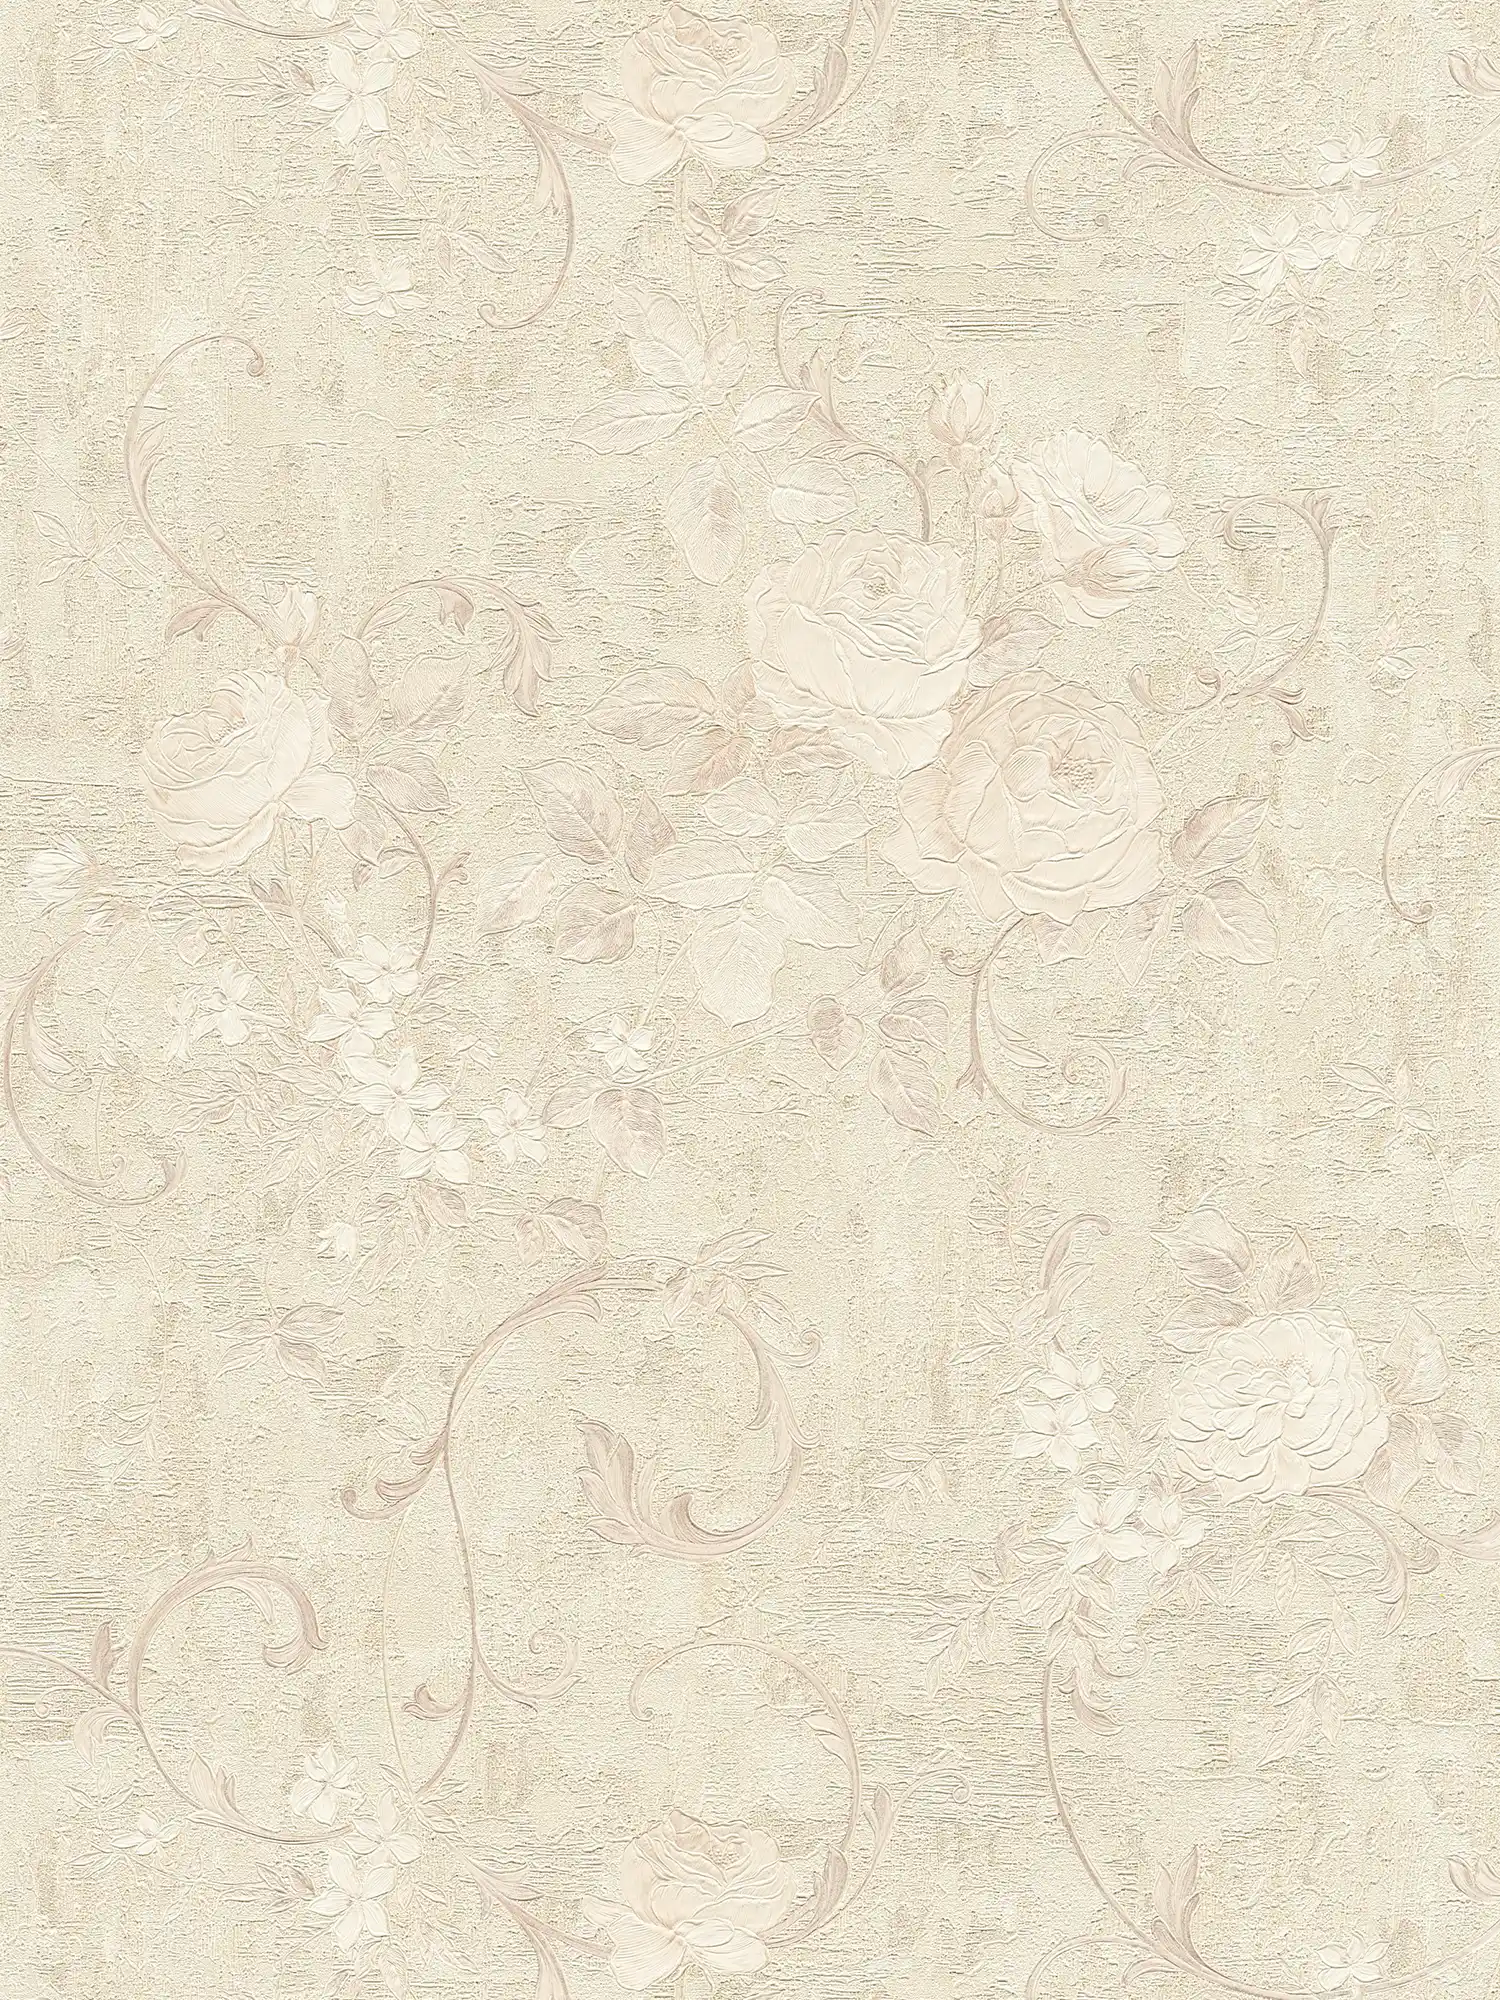 papel pintado con motivos de rosas y zarcillos de hojas - beige, crema, gris
